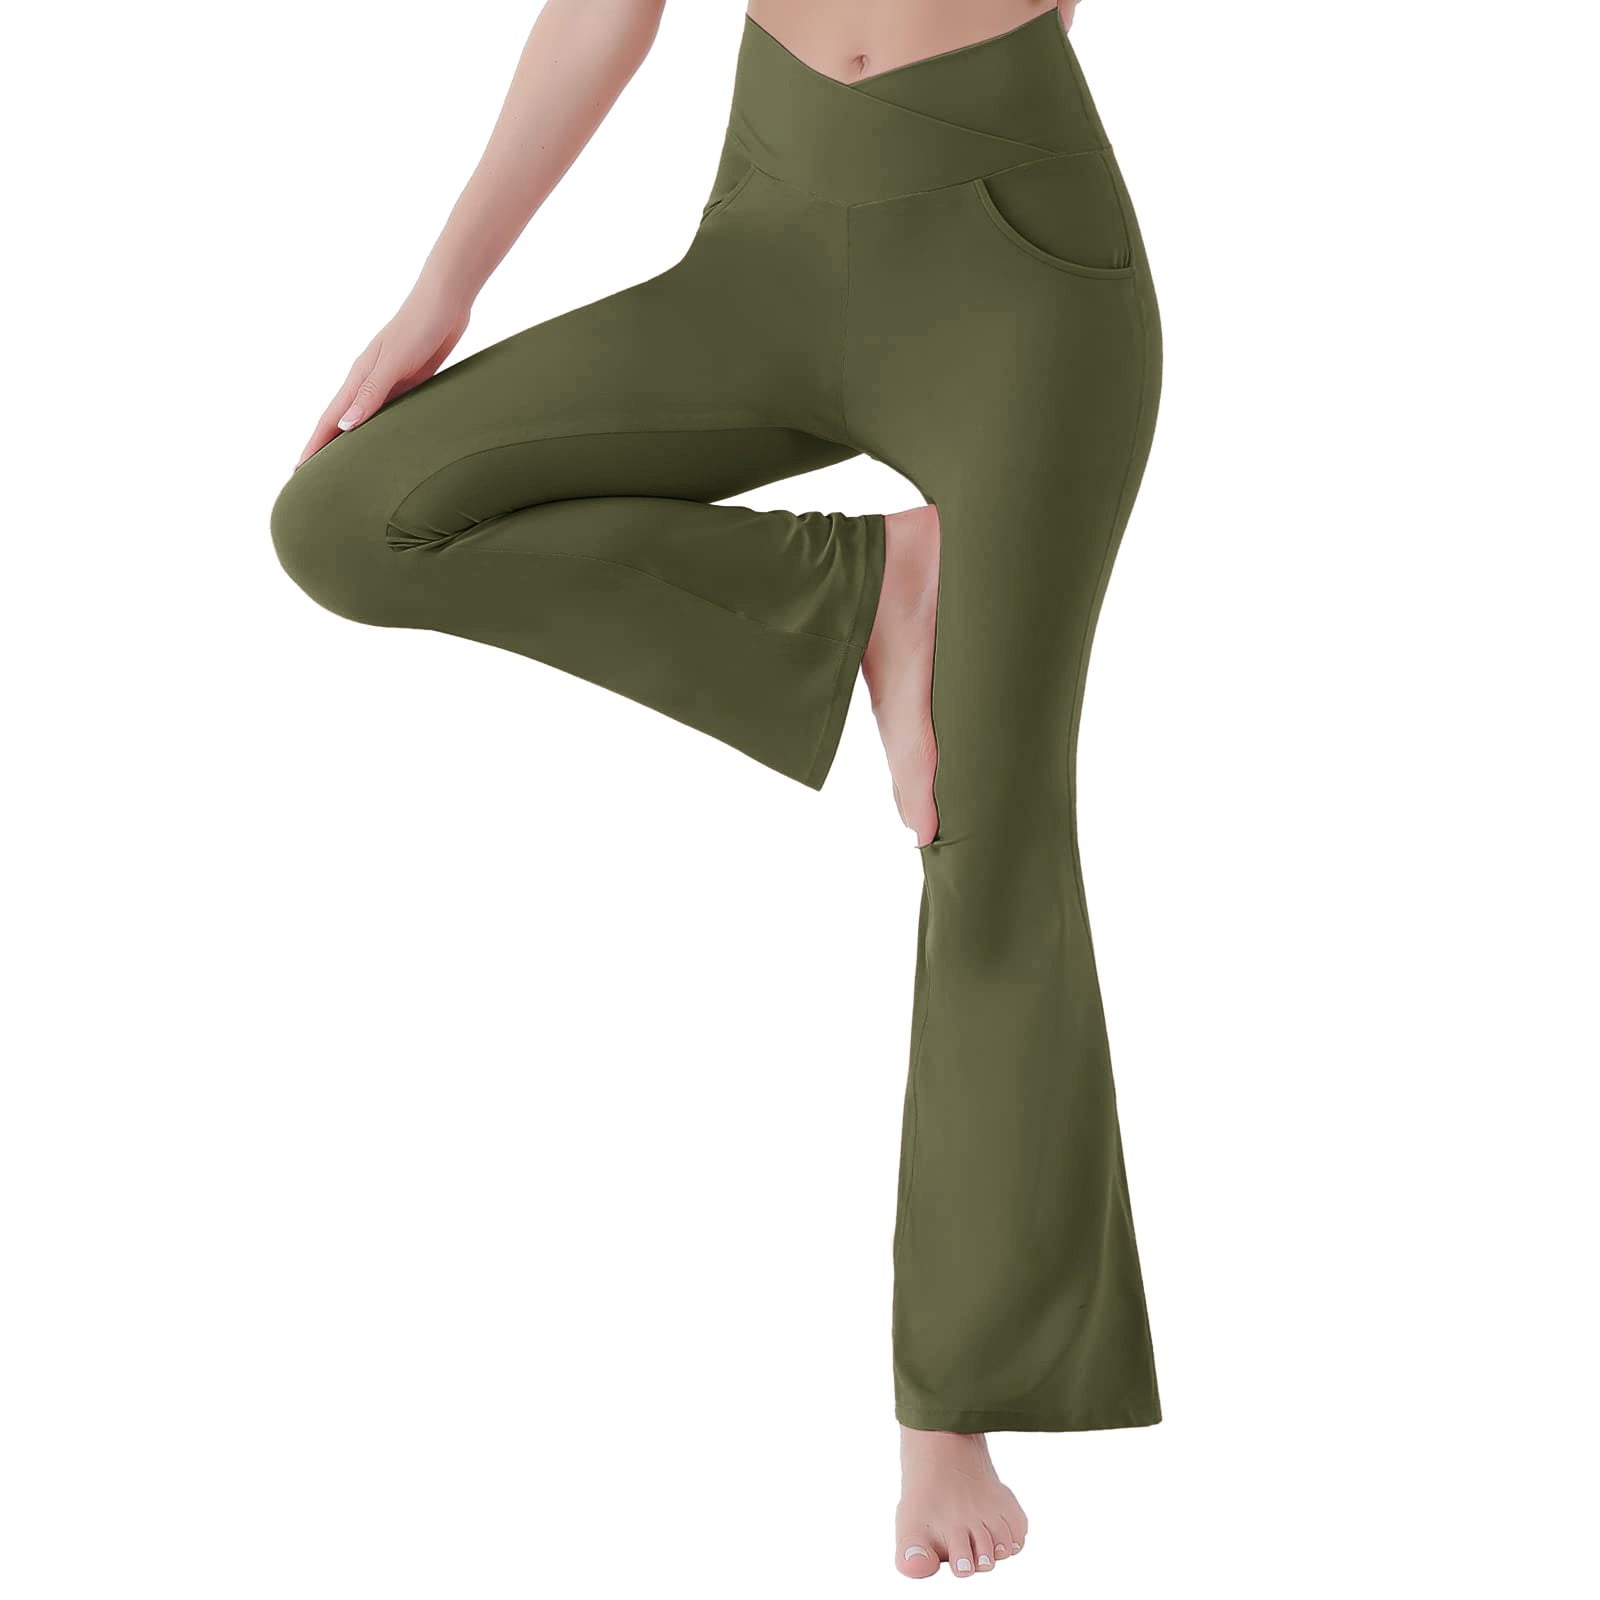 adviicd Yoga Pants For Girls Yoga Dress Pants Leggings for Women